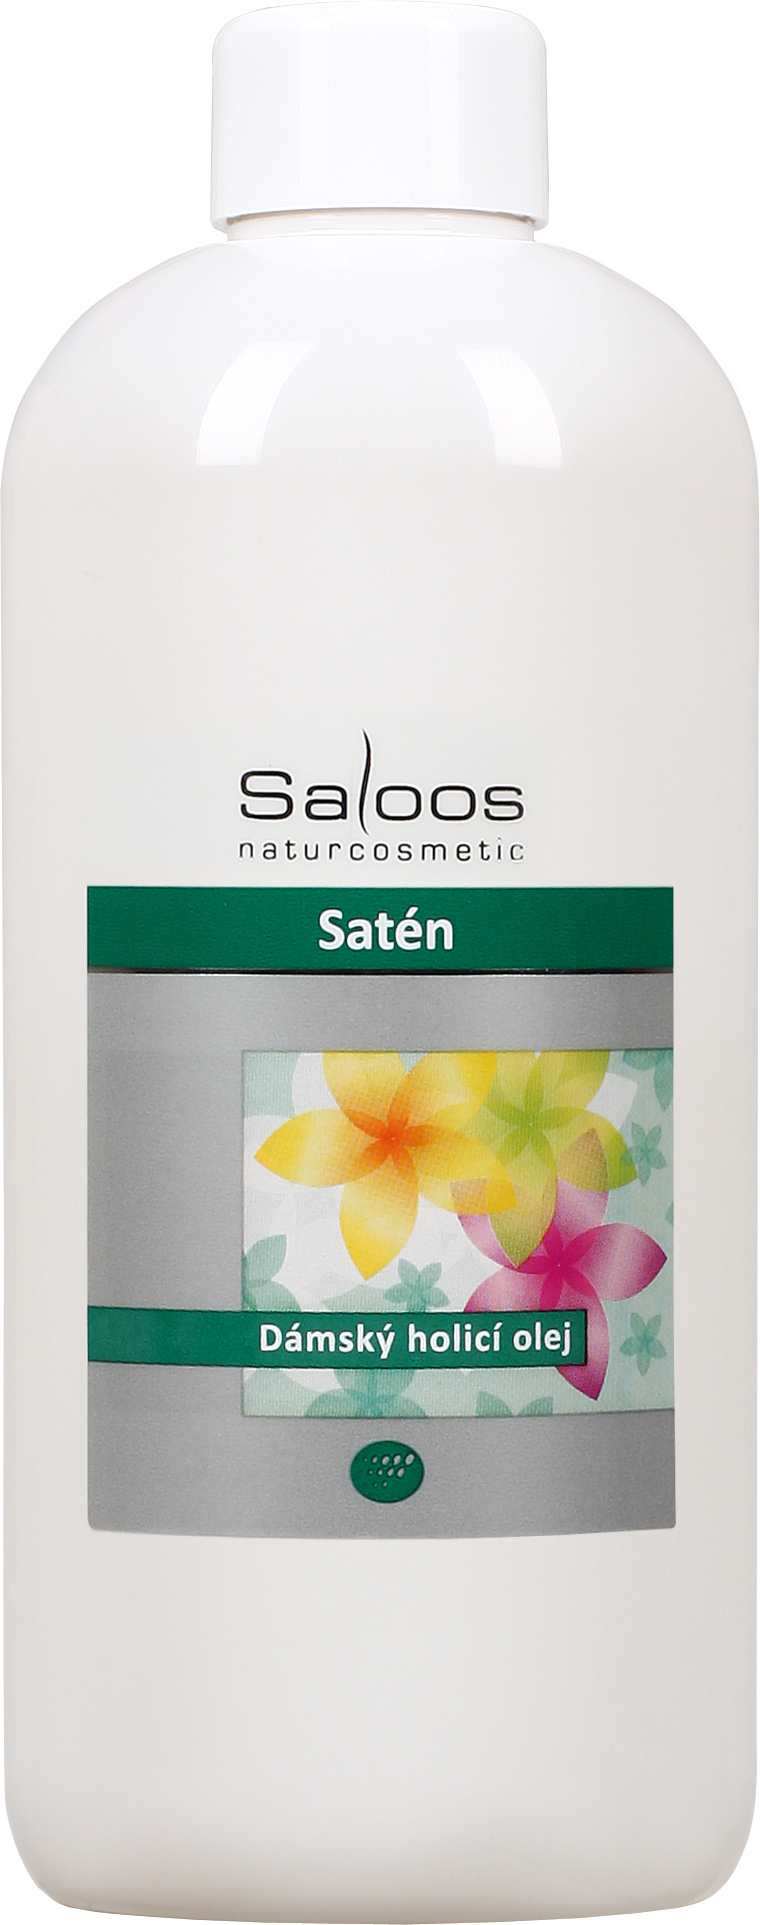 Saloos Satén - dámský holicí olej Balení: 250 ml